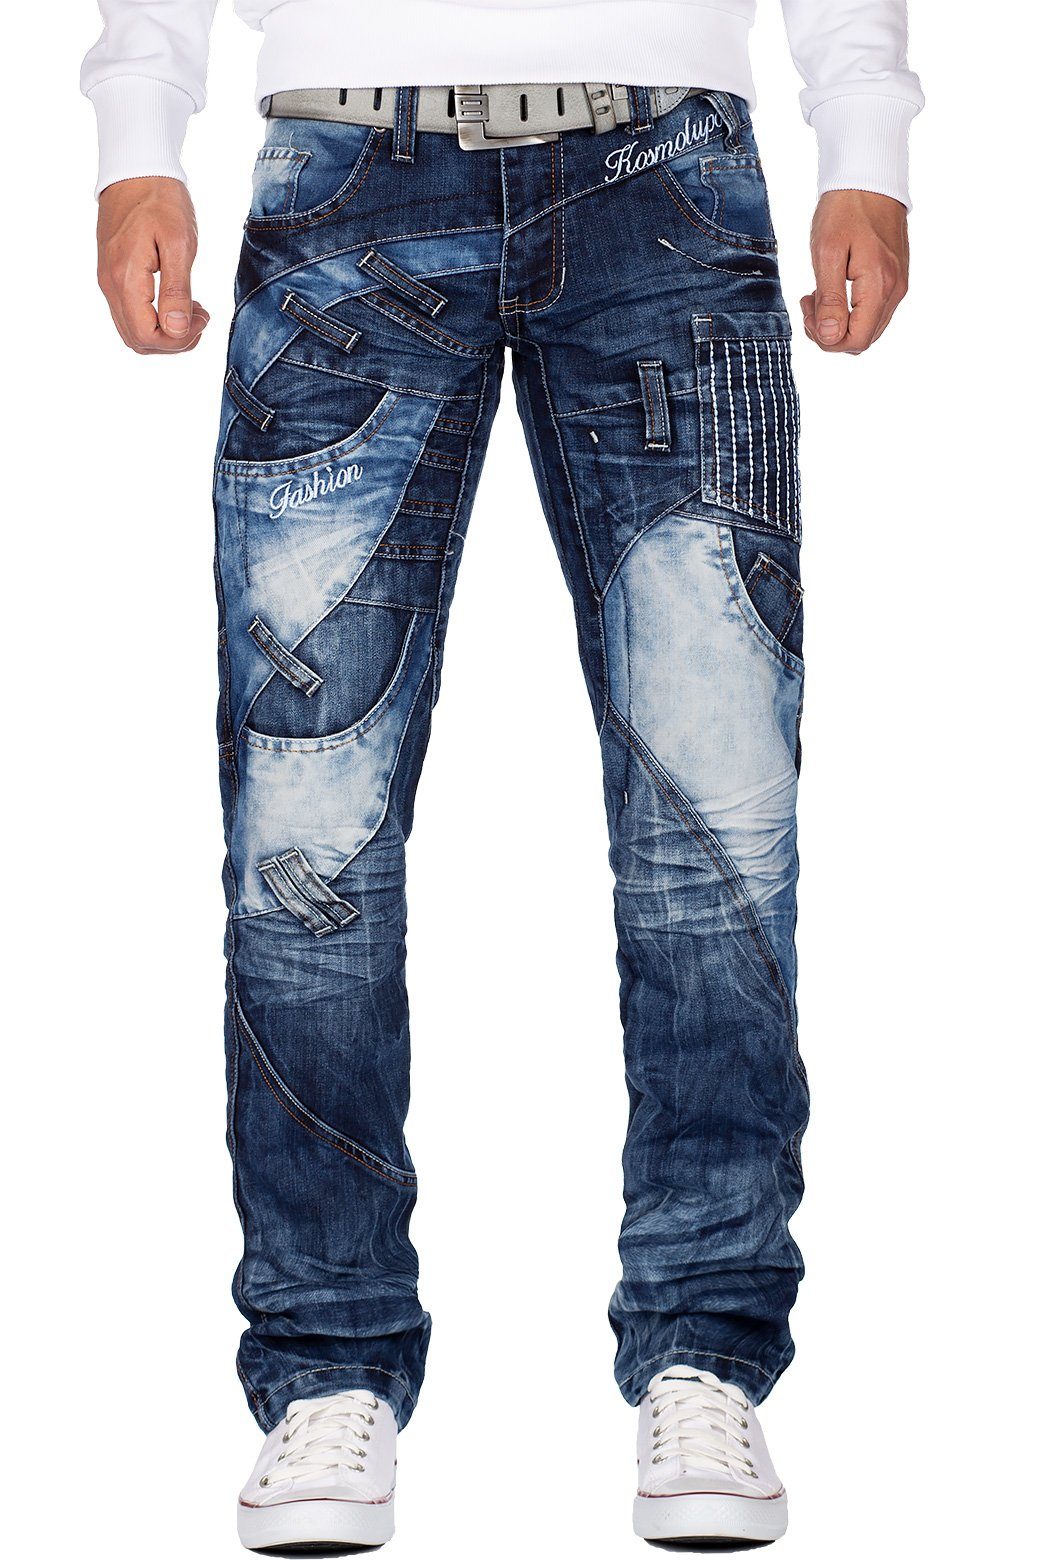 Kosmo Lupo 5-Pocket-Jeans Auffällige Hose KM130 mit Schriftzügen und Verzierungen